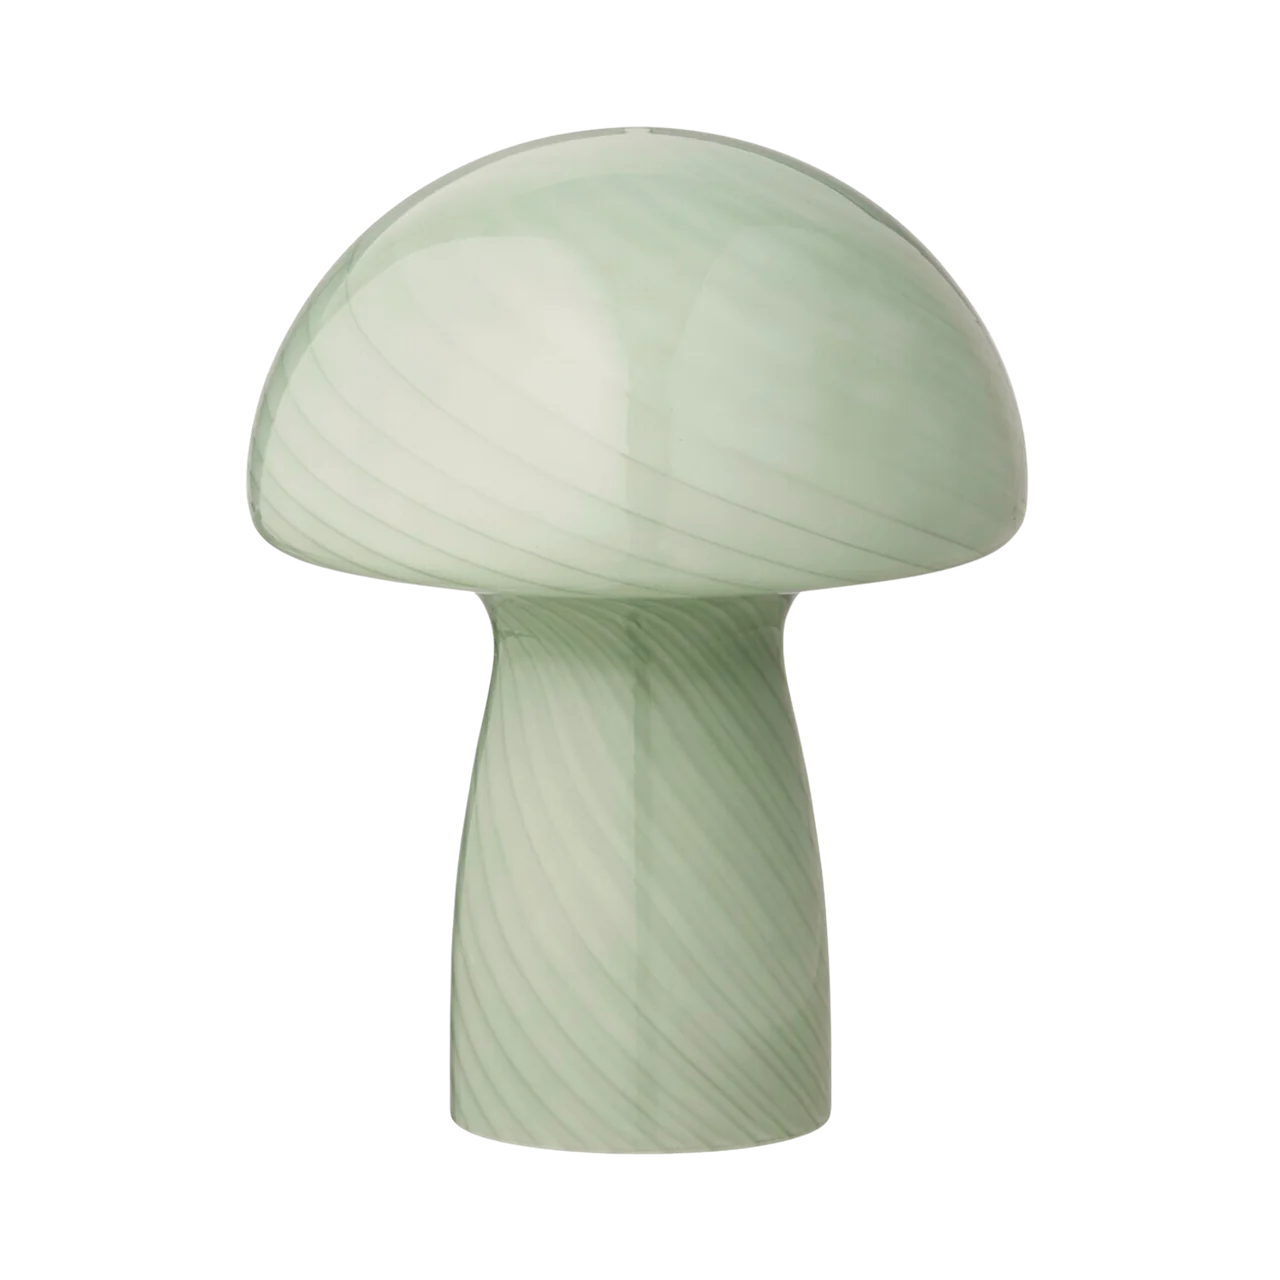 Bahne - Lâmpada de fungos / luminária de cogumelos, hortelã - H23 cm.